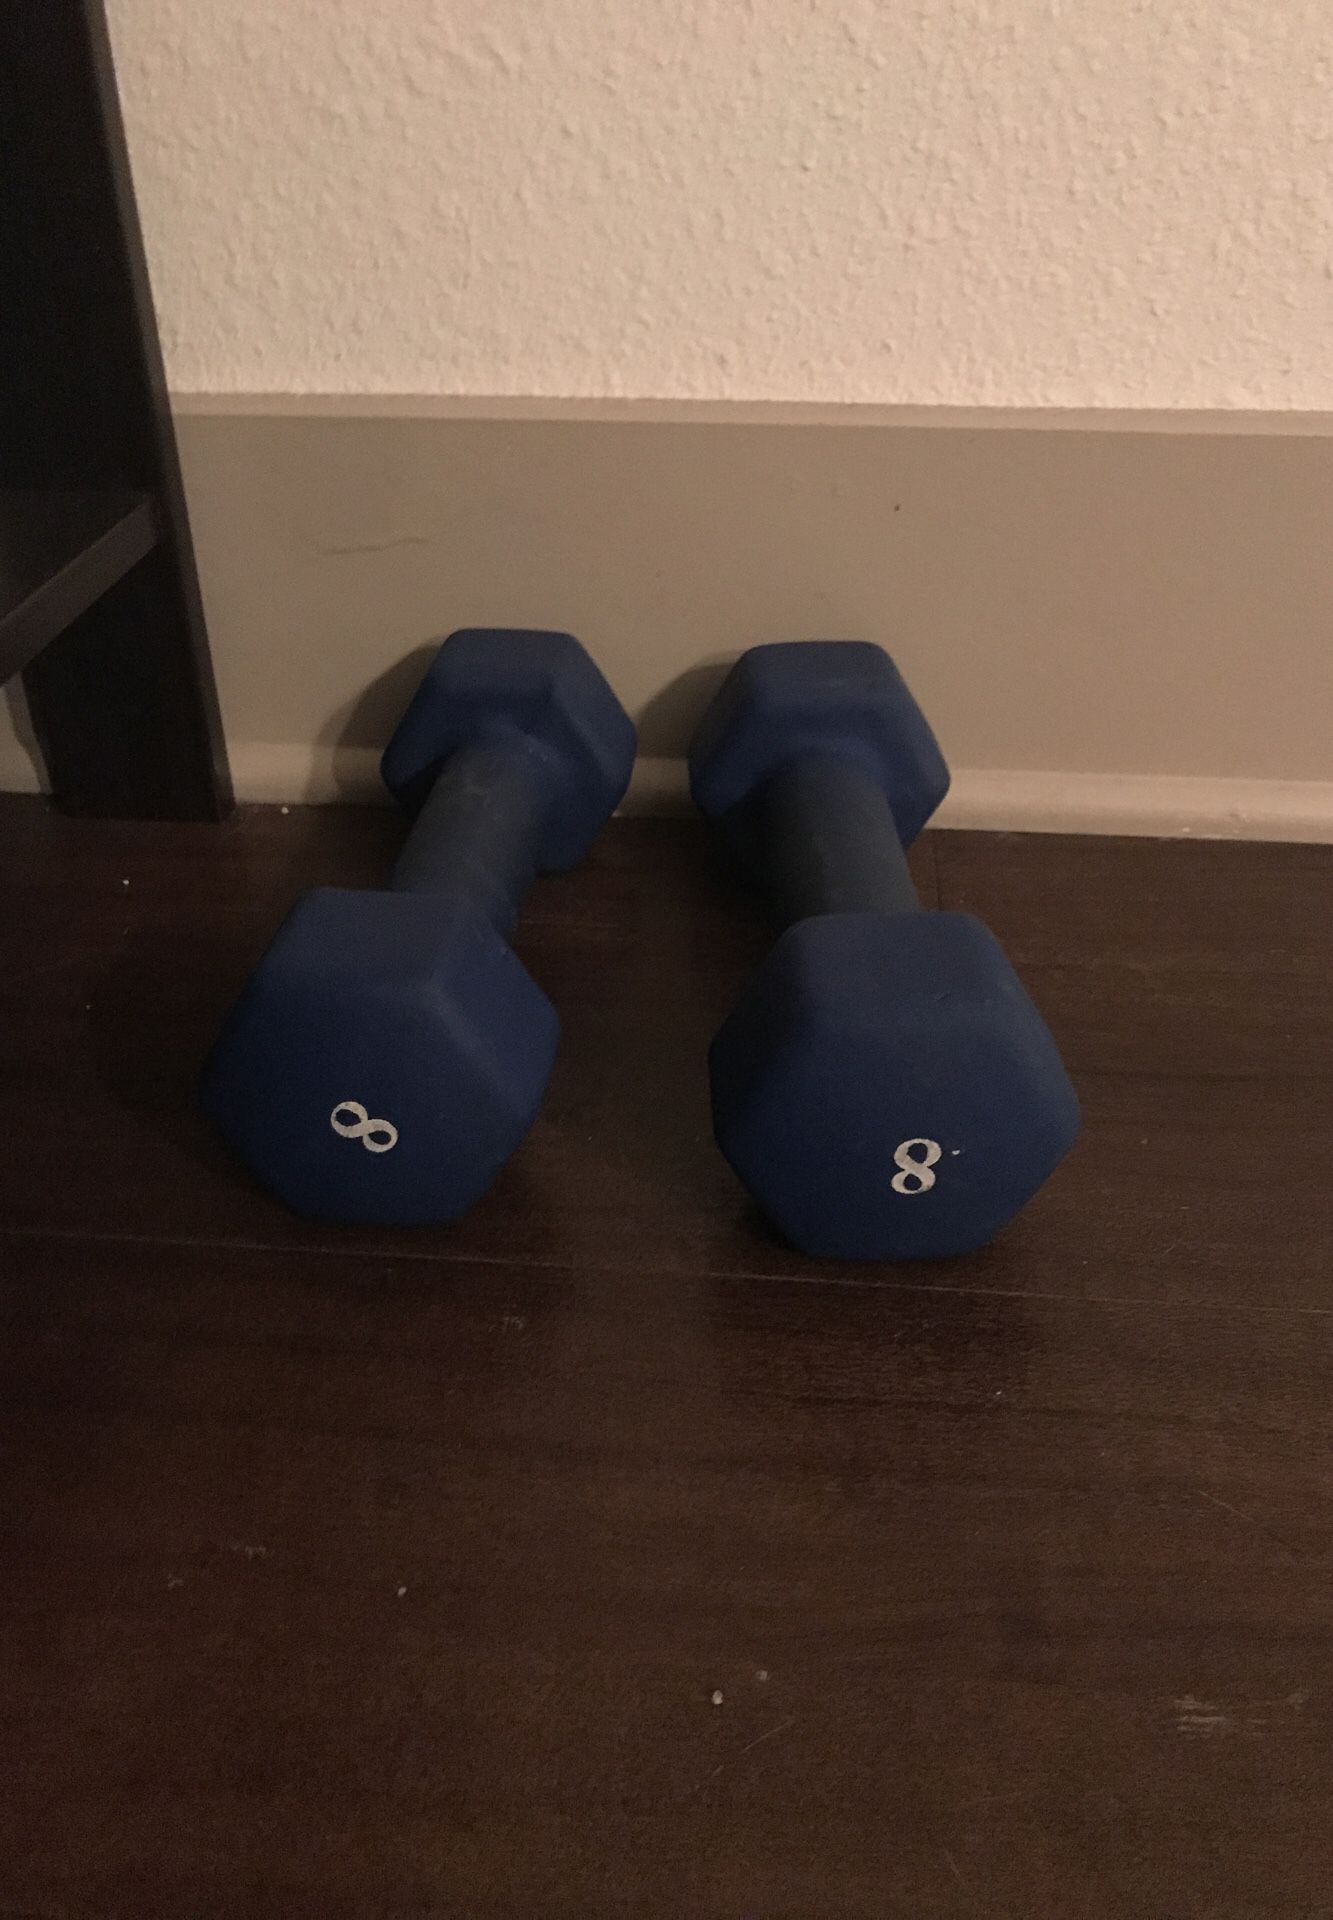 8 pound weights